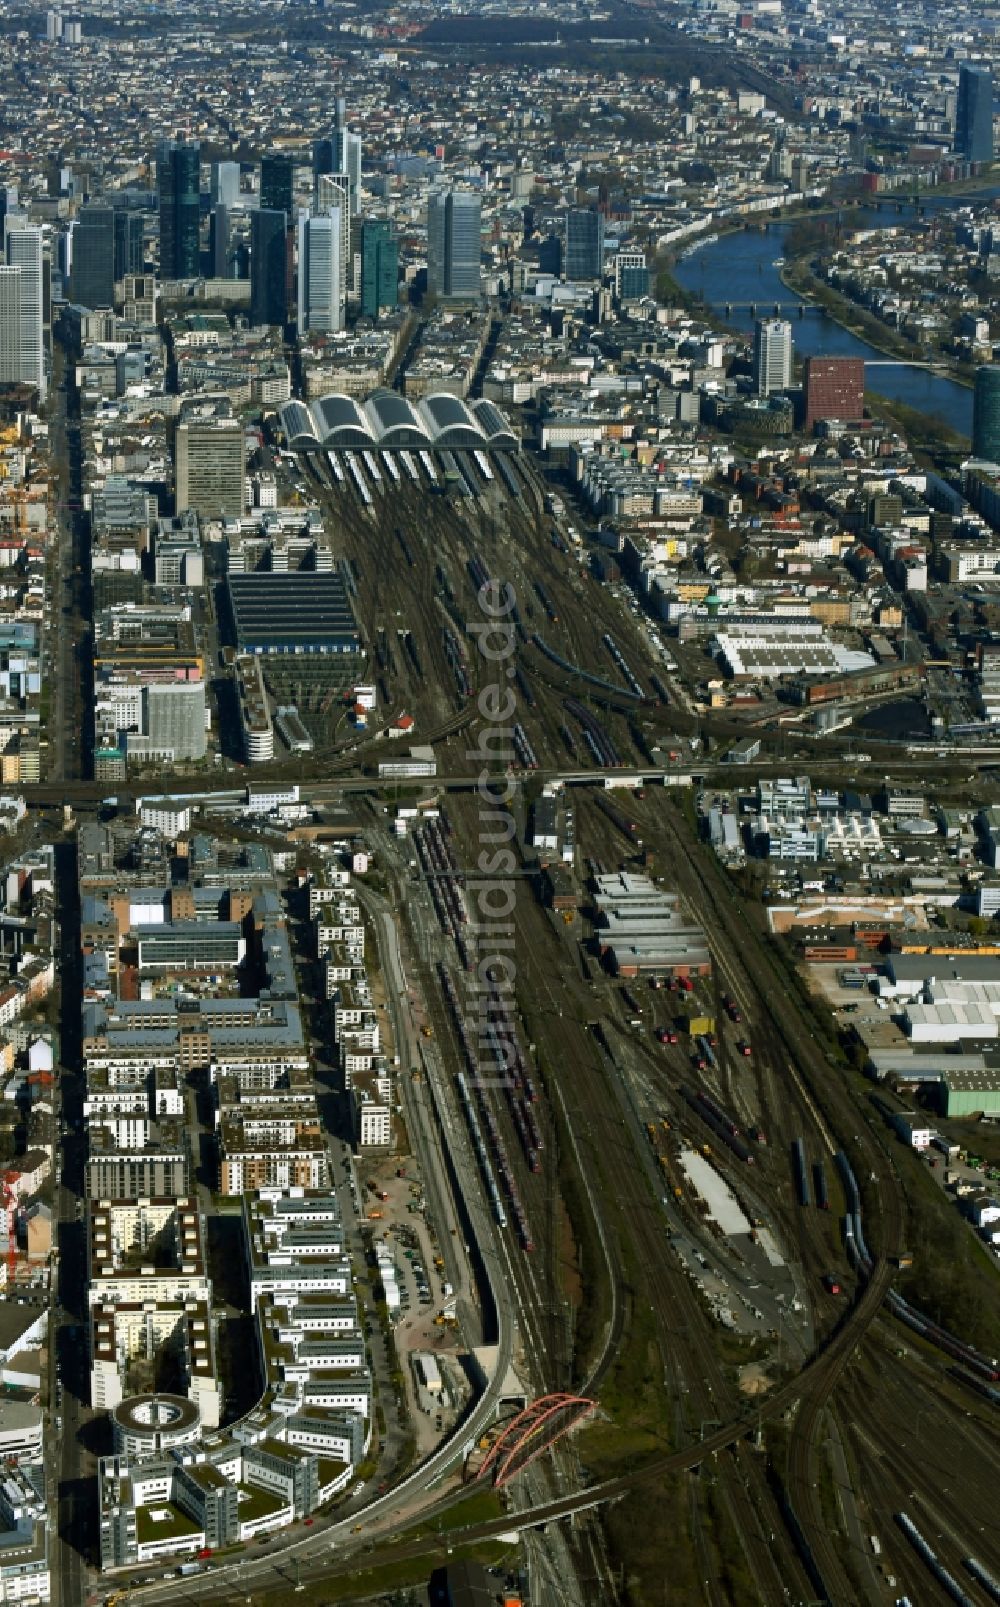 Luftbild Frankfurt am Main - Hauptbahnhof der Deutschen Bahn an der Skyline in Frankfurt am Main im Bundesland Hessen